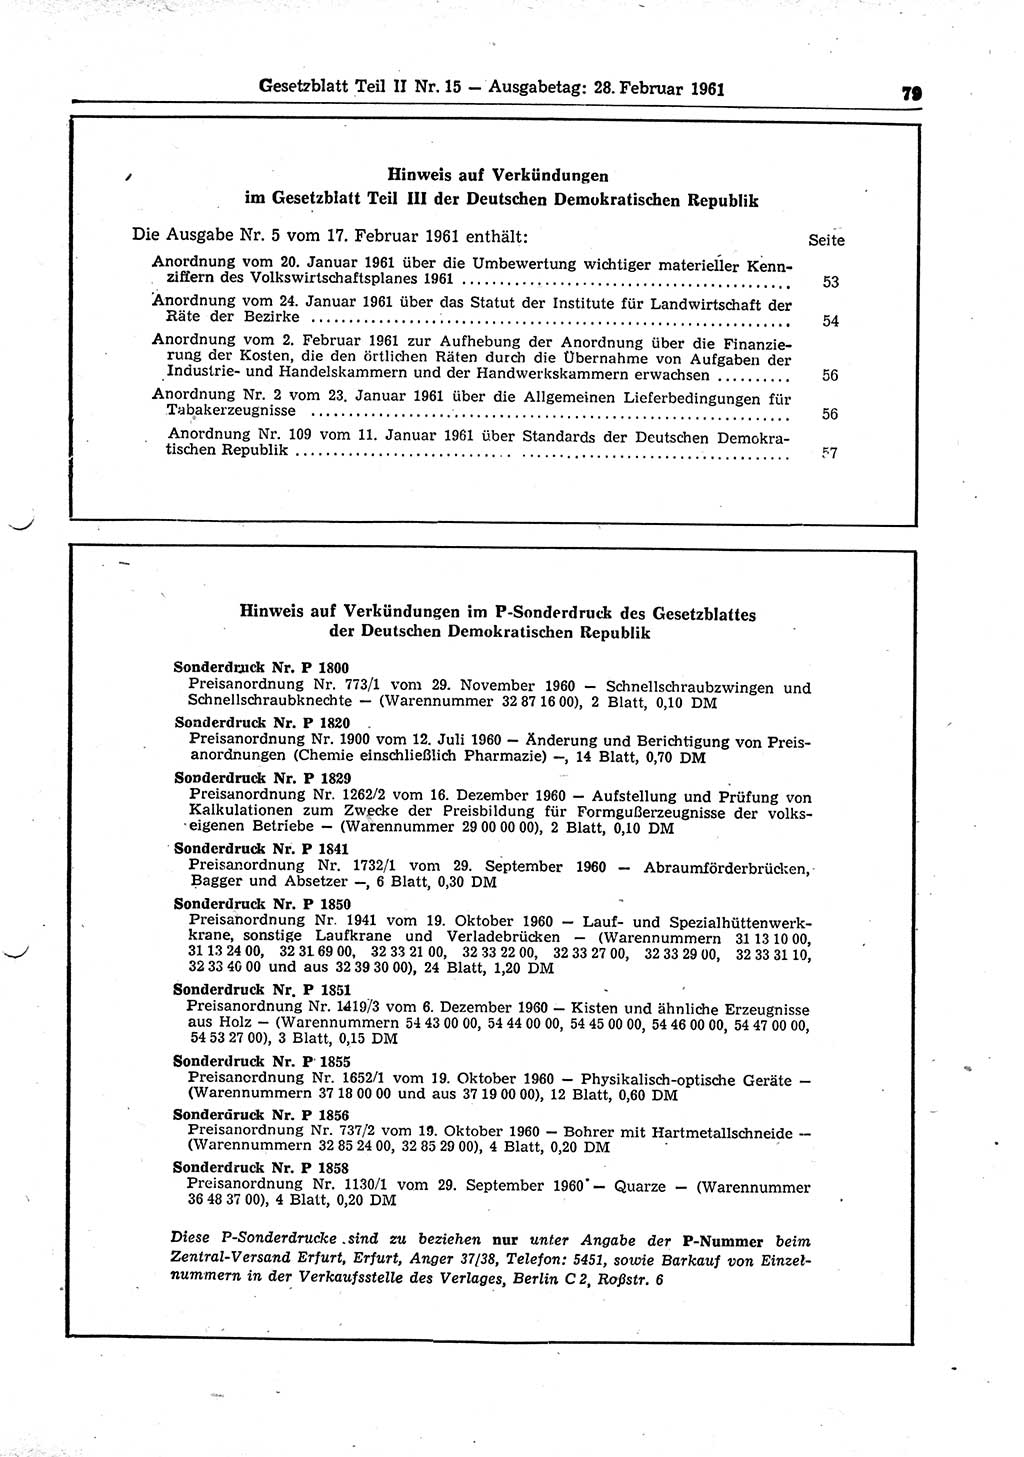 Gesetzblatt (GBl.) der Deutschen Demokratischen Republik (DDR) Teil ⅠⅠ 1961, Seite 79 (GBl. DDR ⅠⅠ 1961, S. 79)